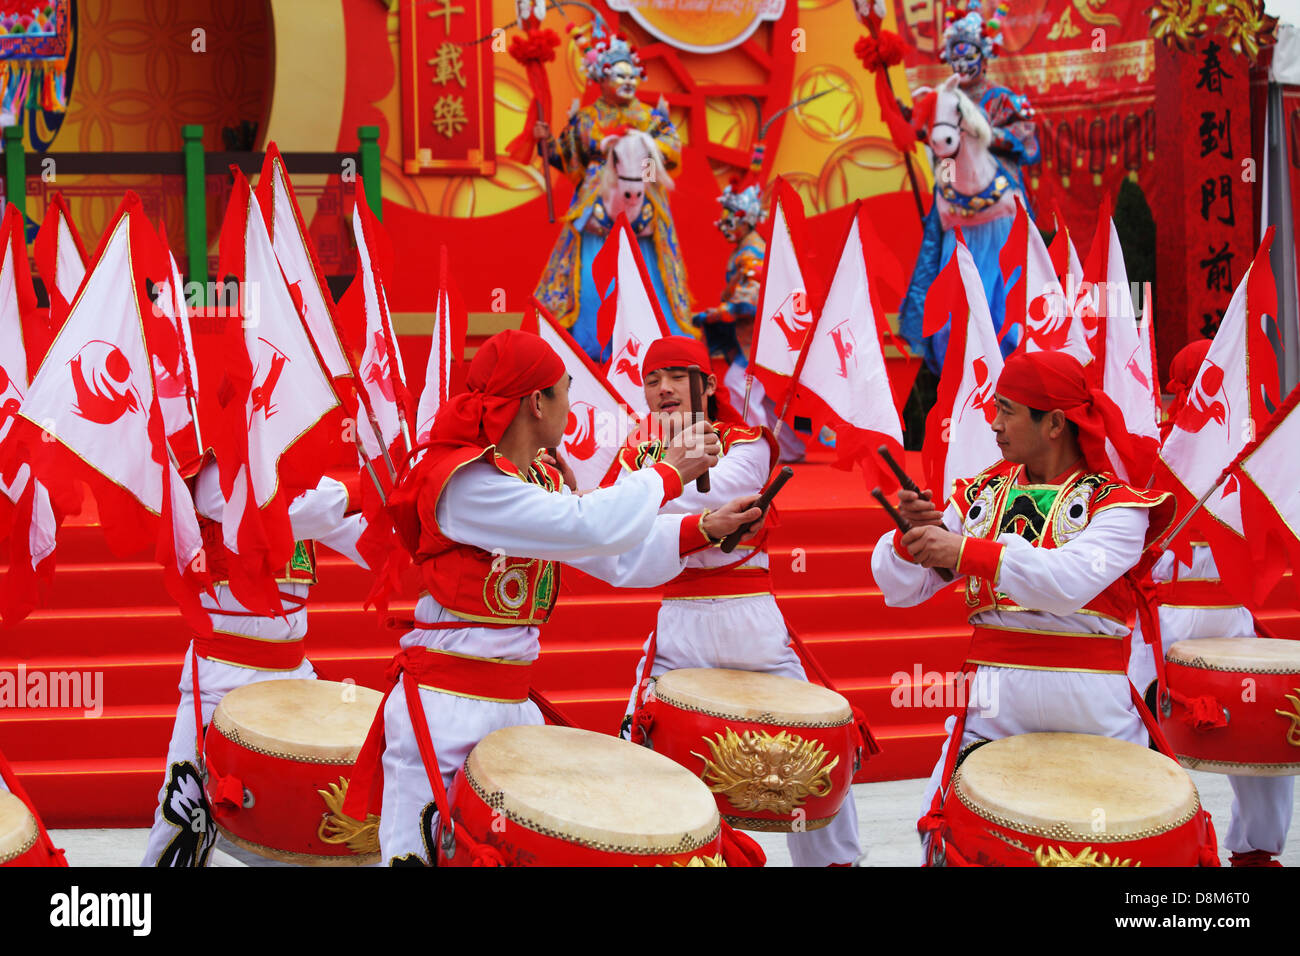 Rosso e oro, tamburi e un sacco di bandiere rosse Foto Stock